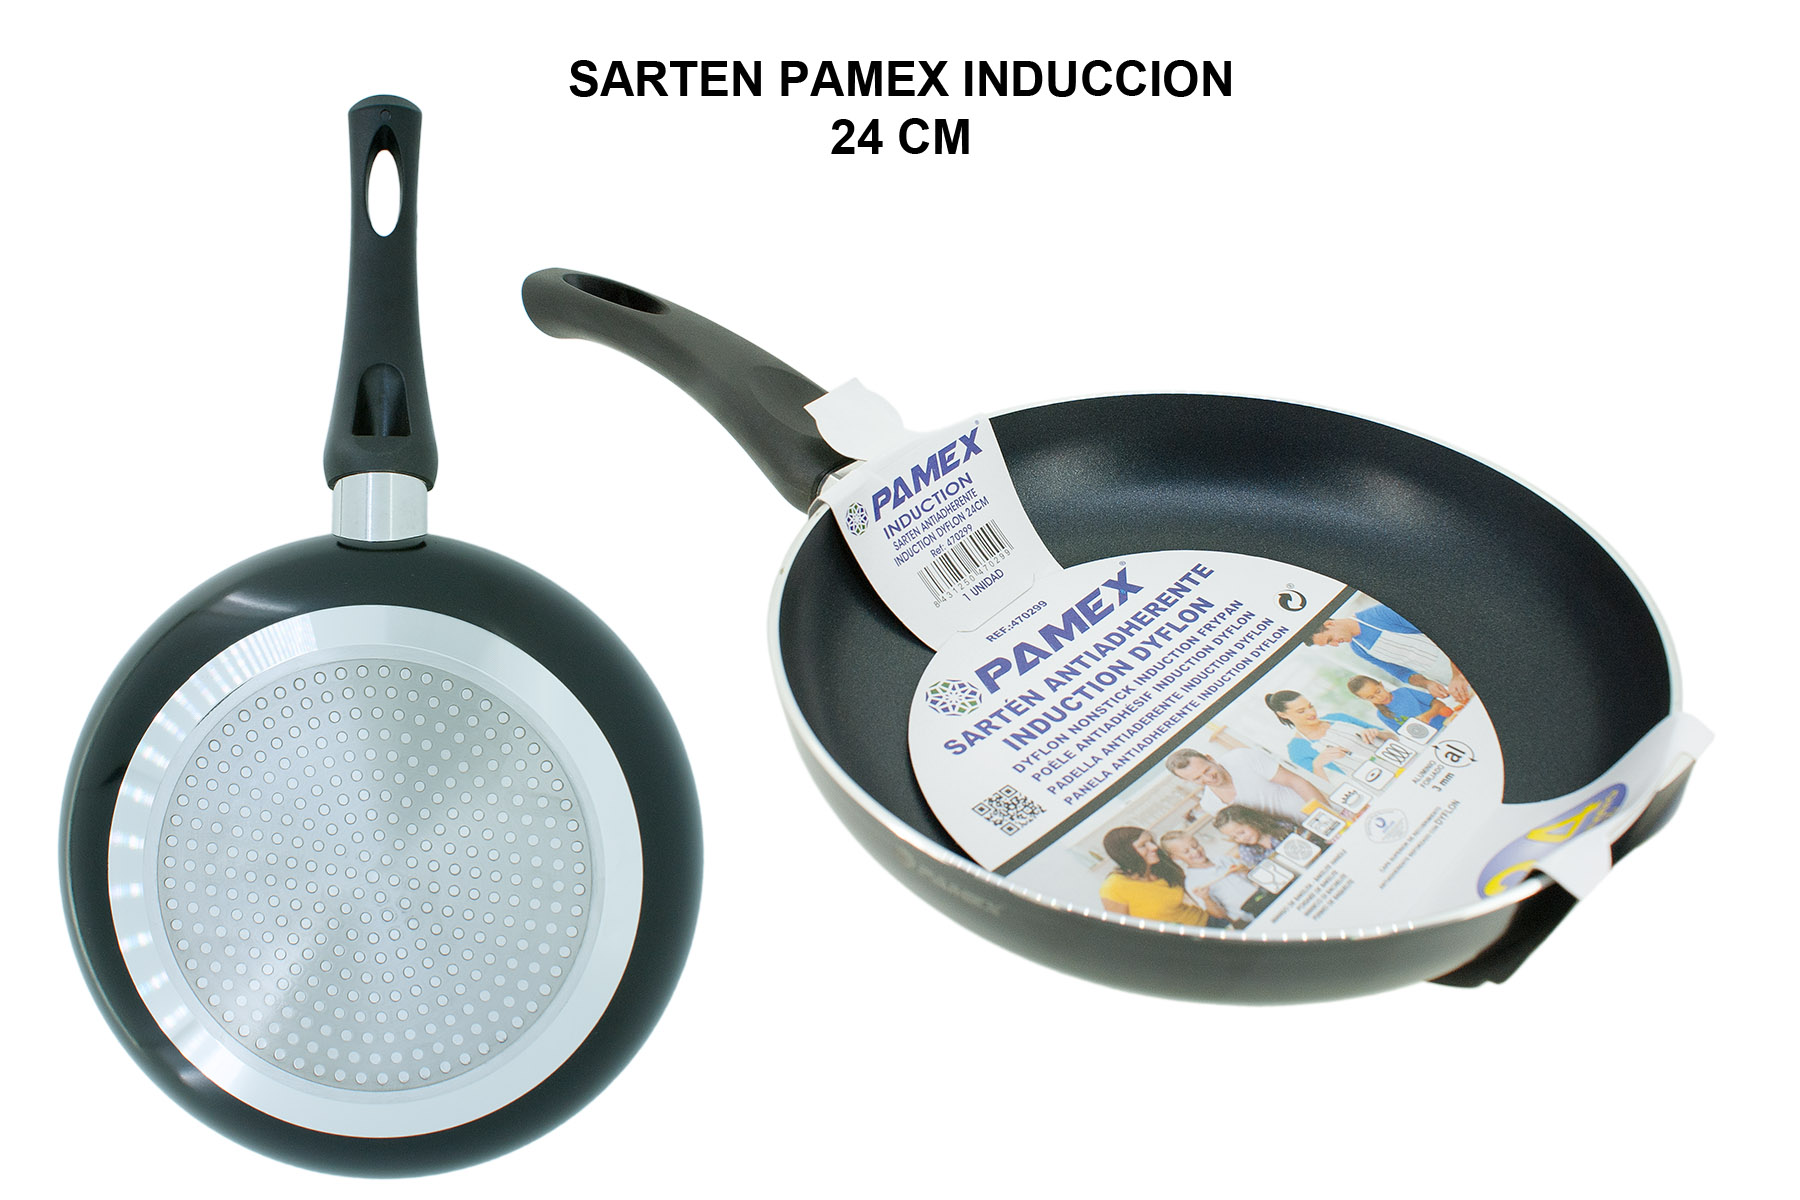 SARTEN PAMEX INDUCCION 24 CM